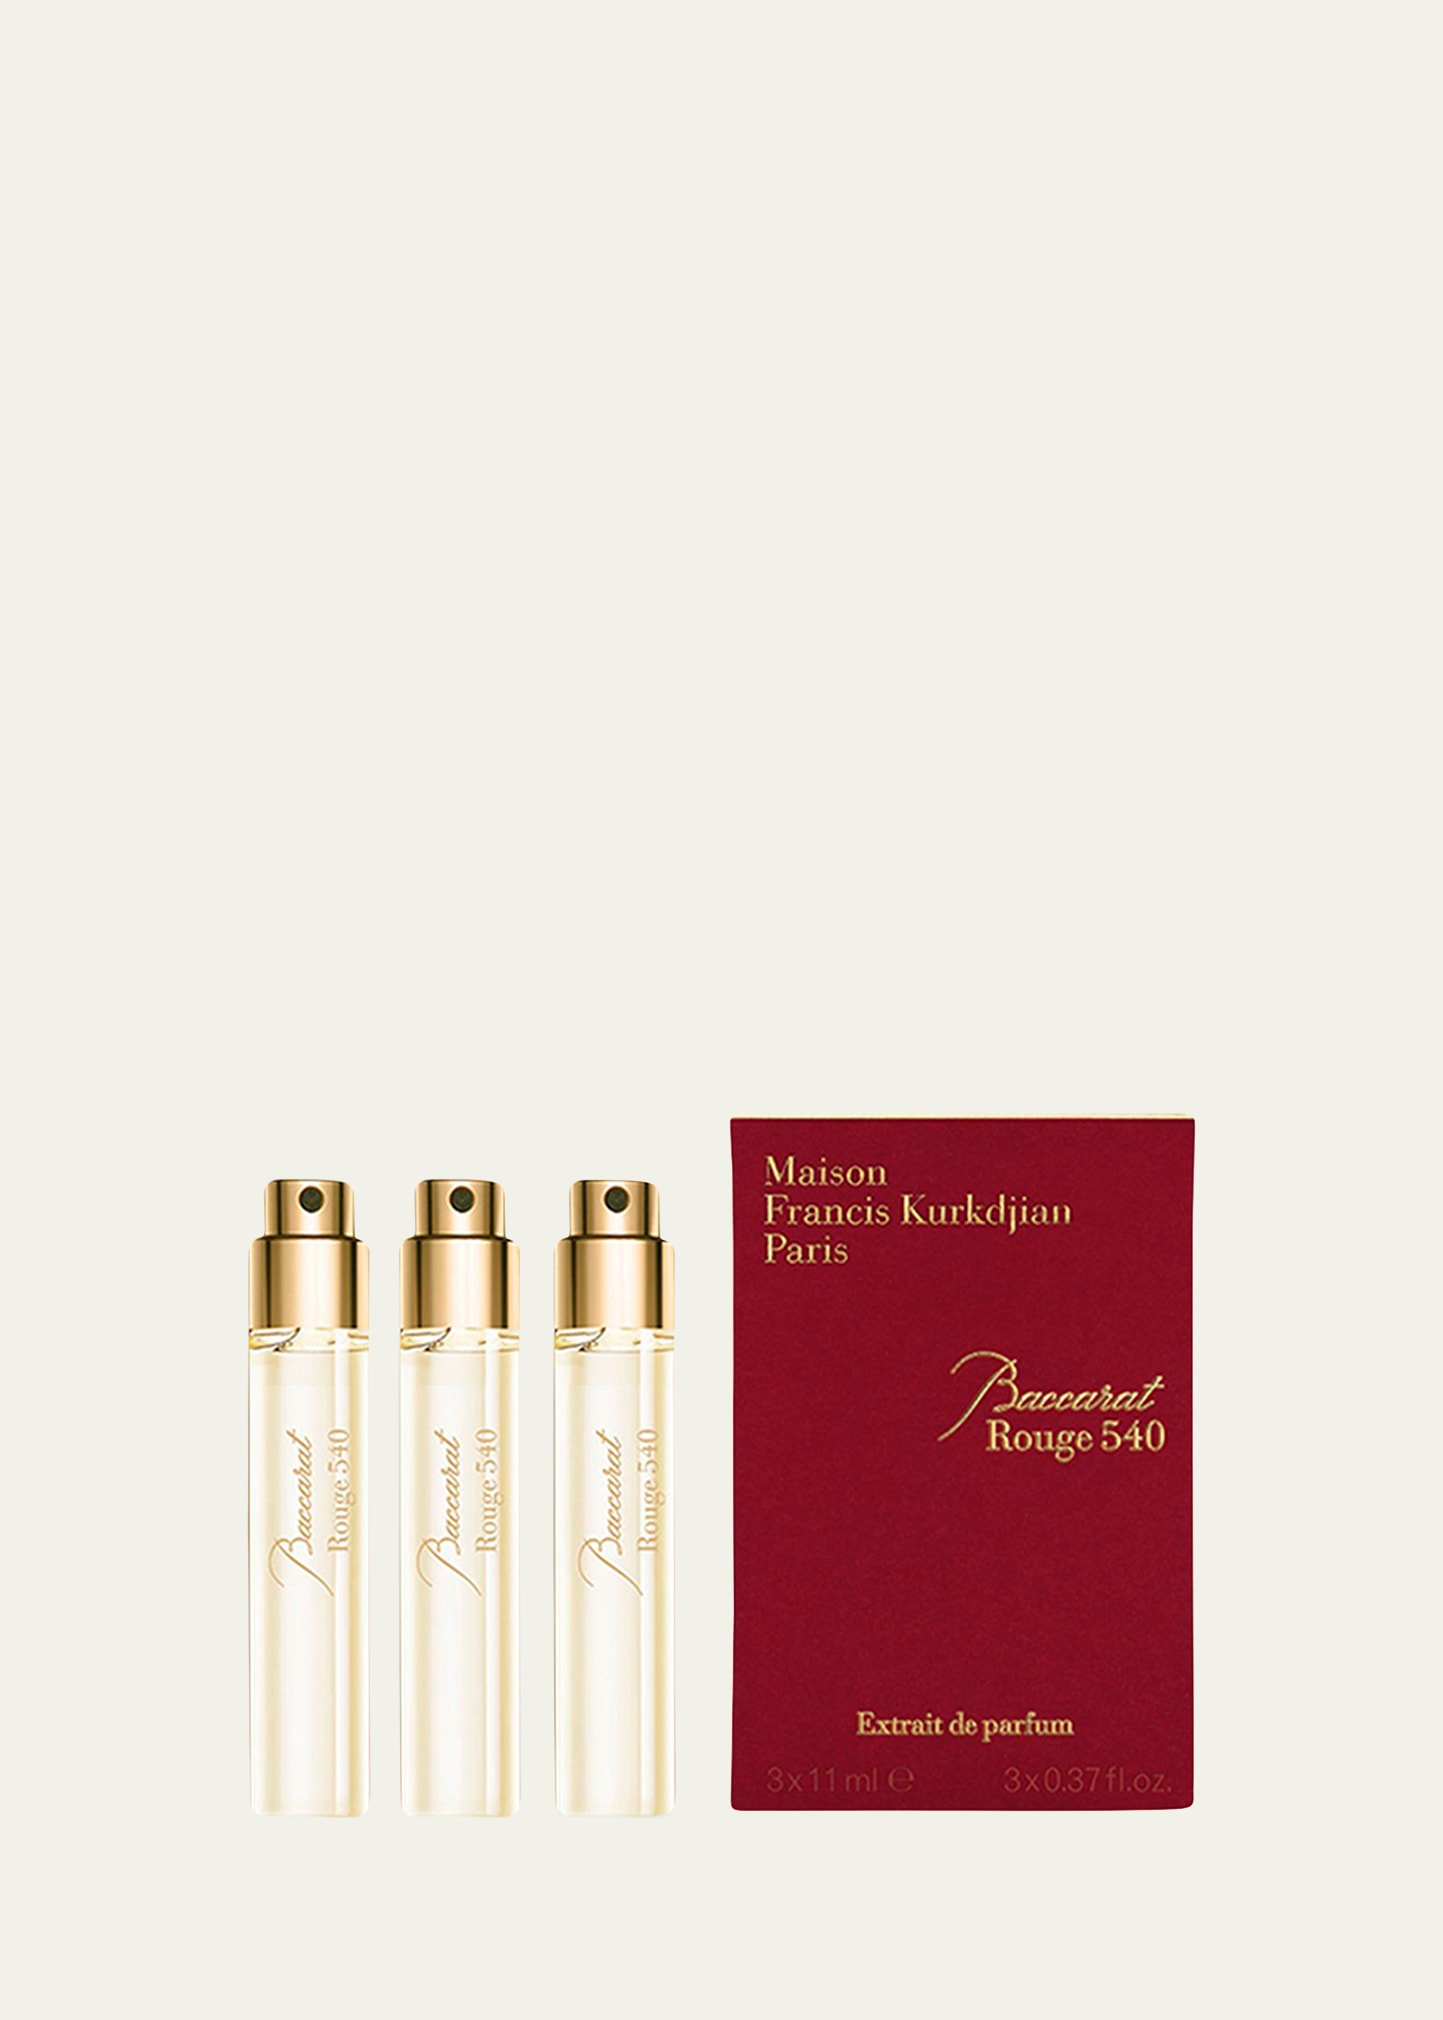 Baccarat Rouge 540 Extrait de Parfum Refills, 3 x 0.37 oz.